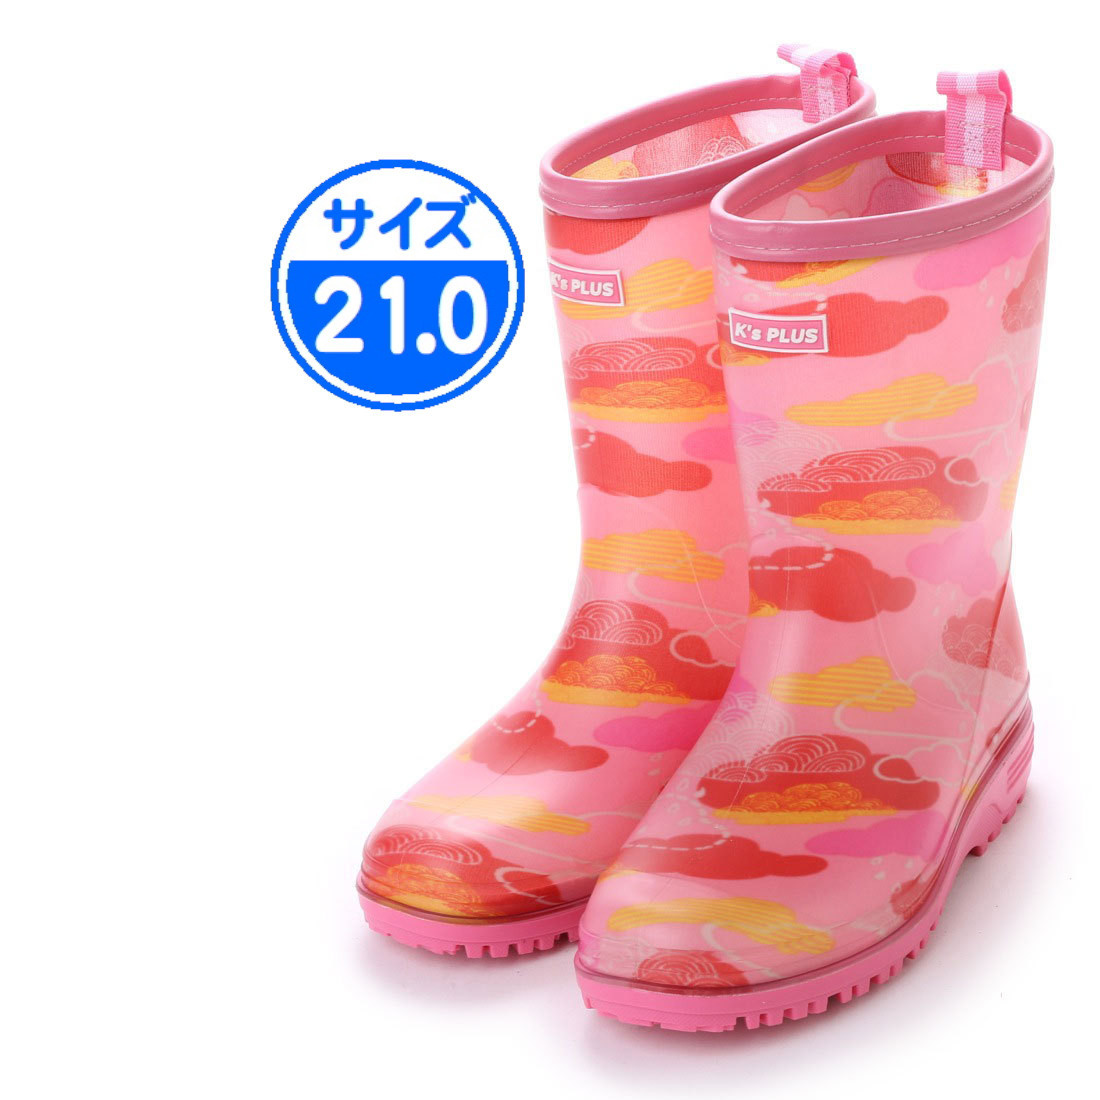 [ новый товар не использовался ] Kids влагостойкая обувь камуфляж розовый 21.0cm 17007